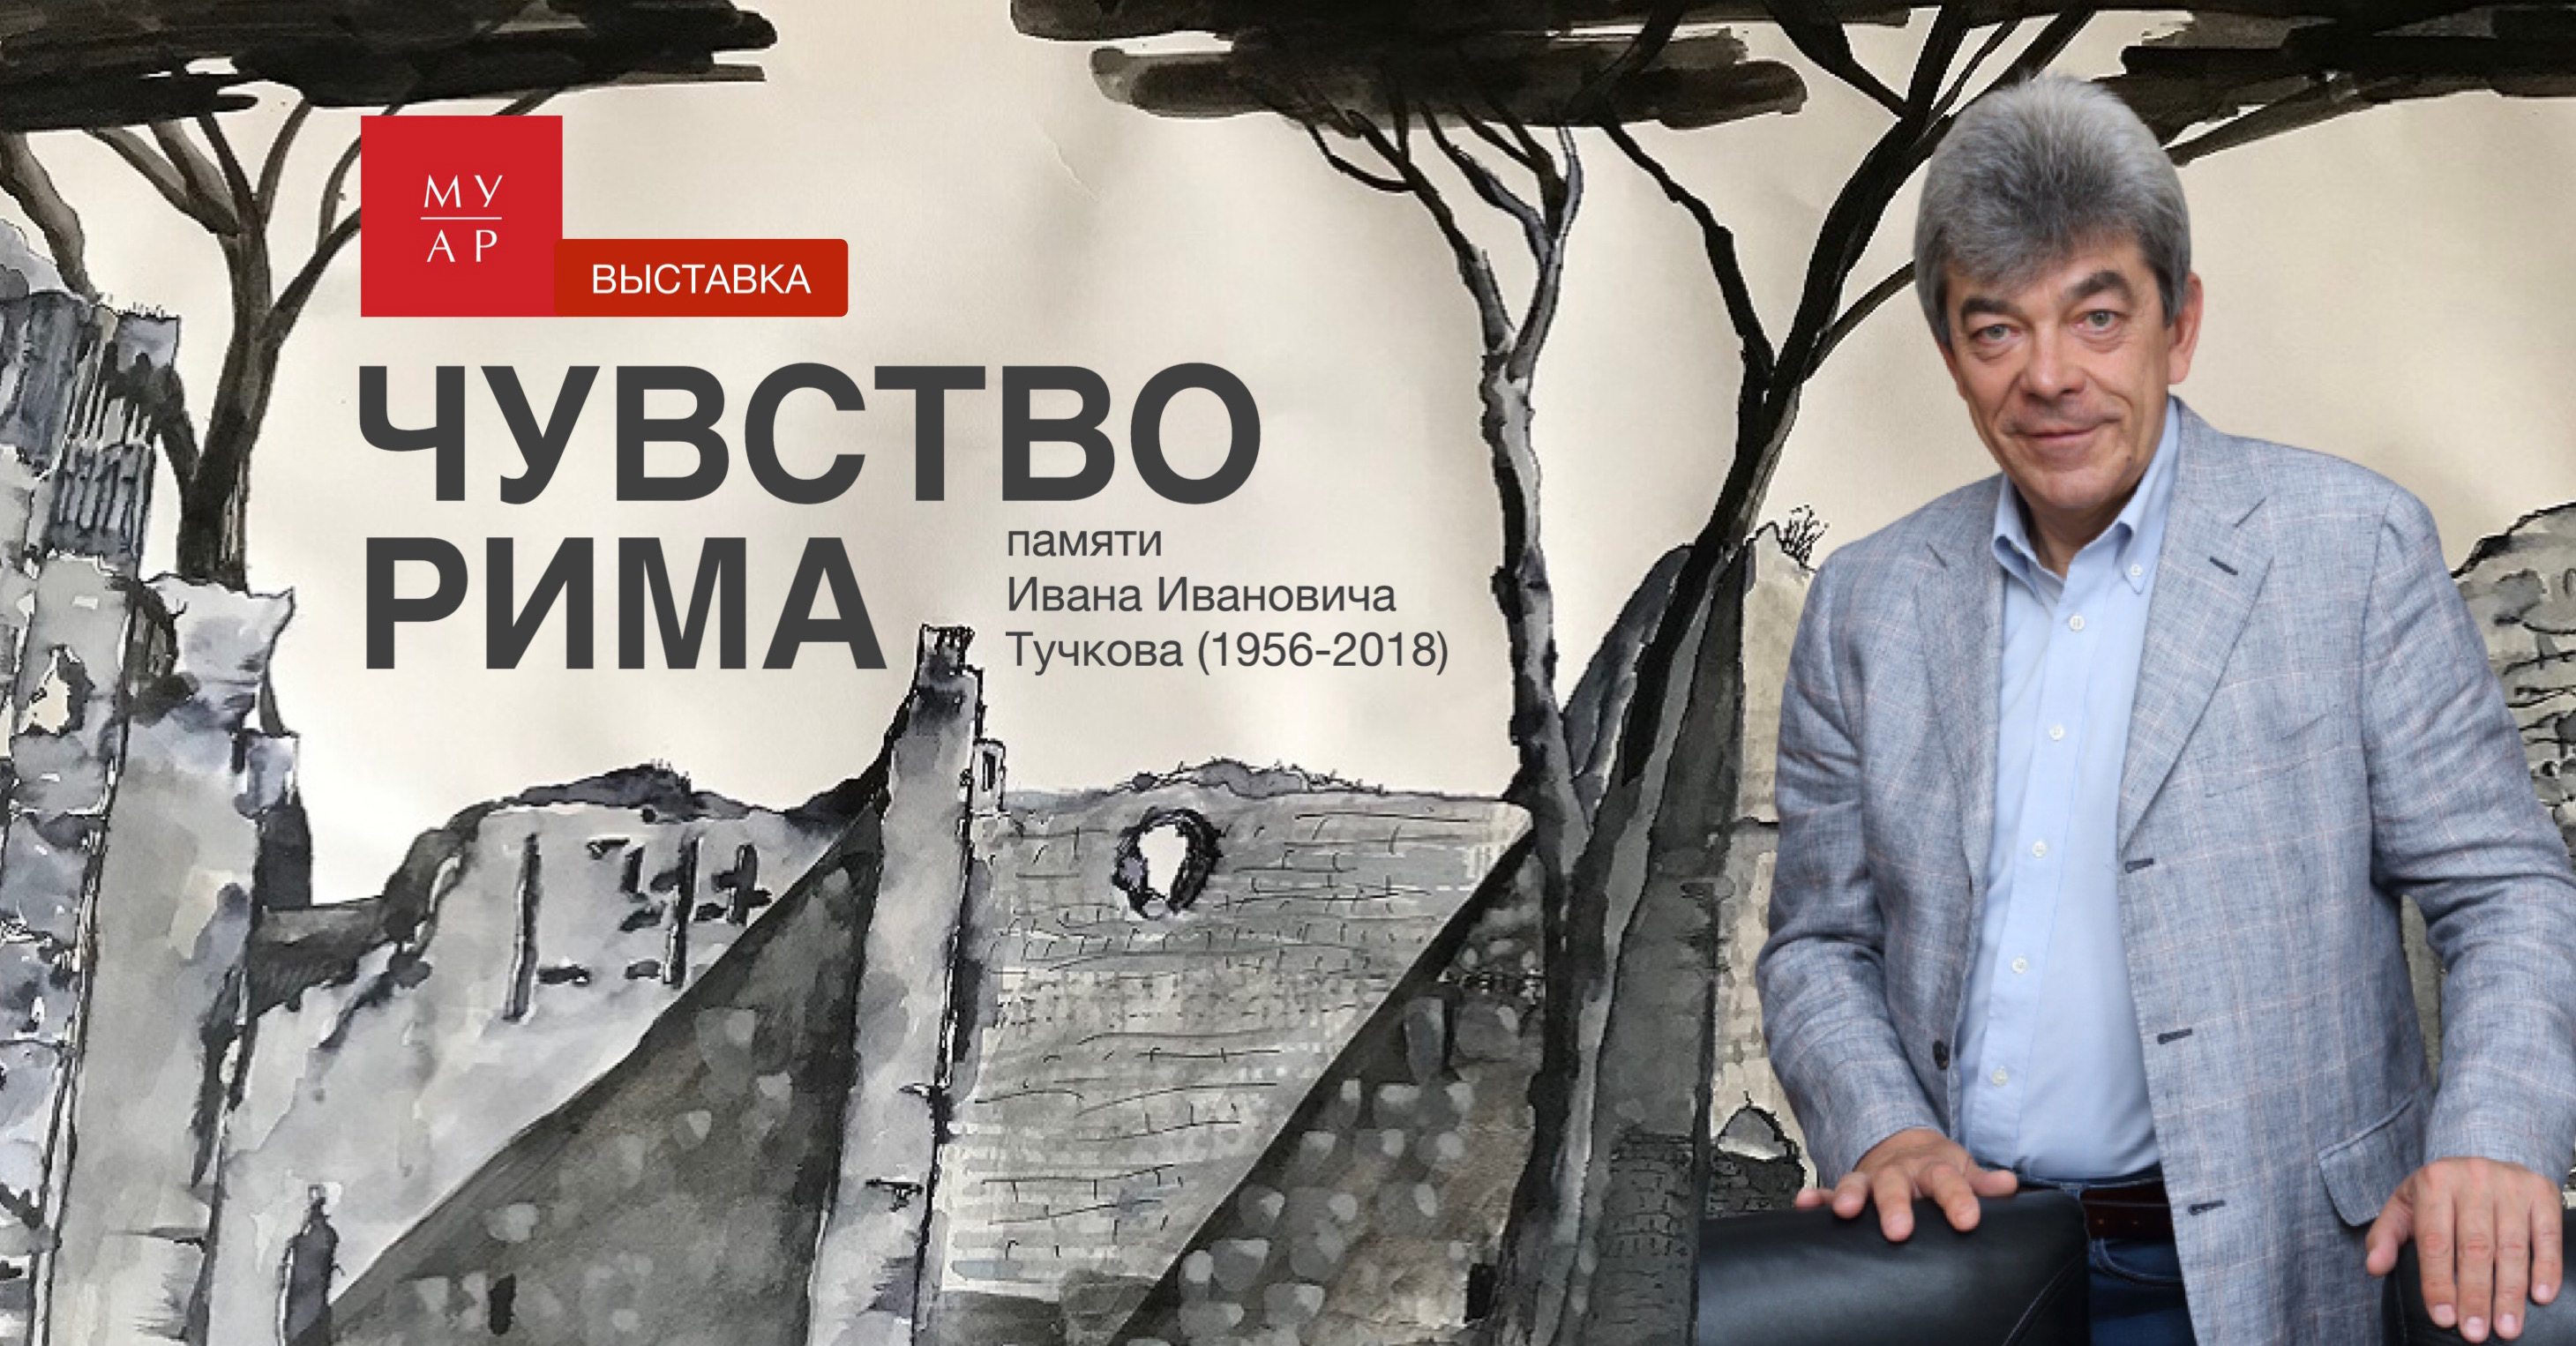 Выставка "Чувство Рима" памяти Ивана Ивановича Тучкова в Государственном музее архитектуры